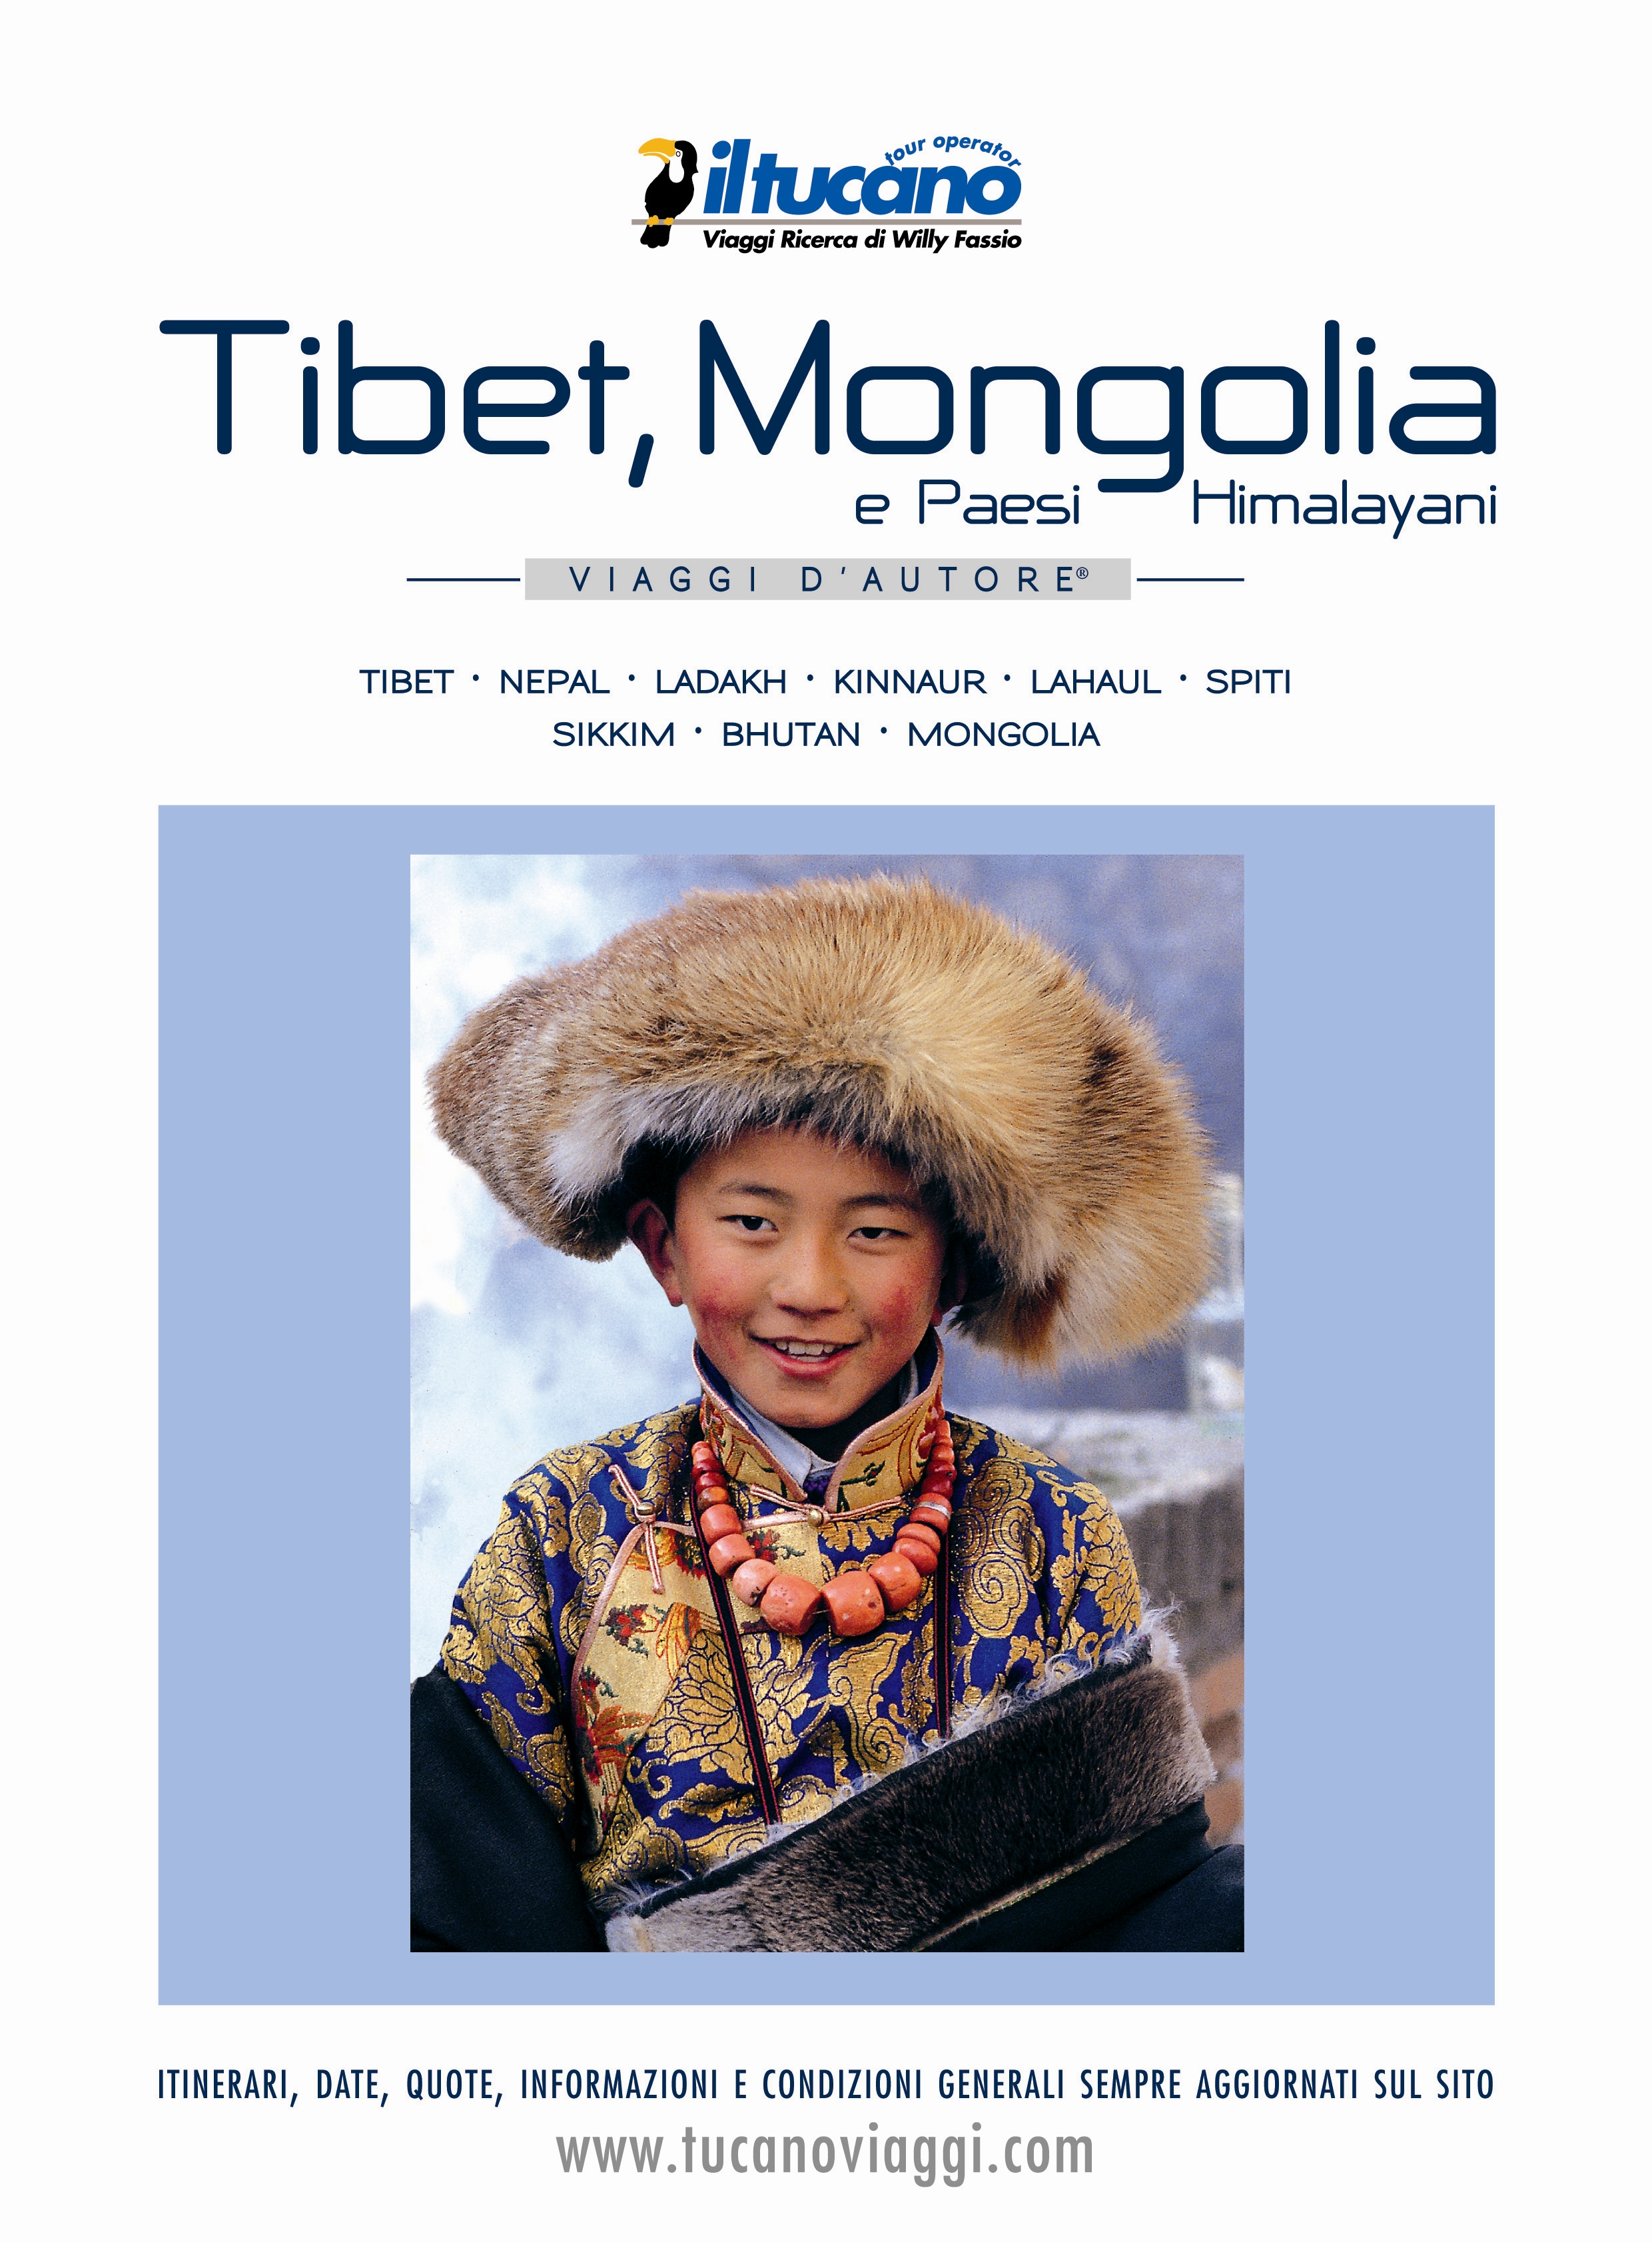 Il Tucano Viaggi presenta il catalogo “Tibet, Mongolia e Paesi Himalayani”